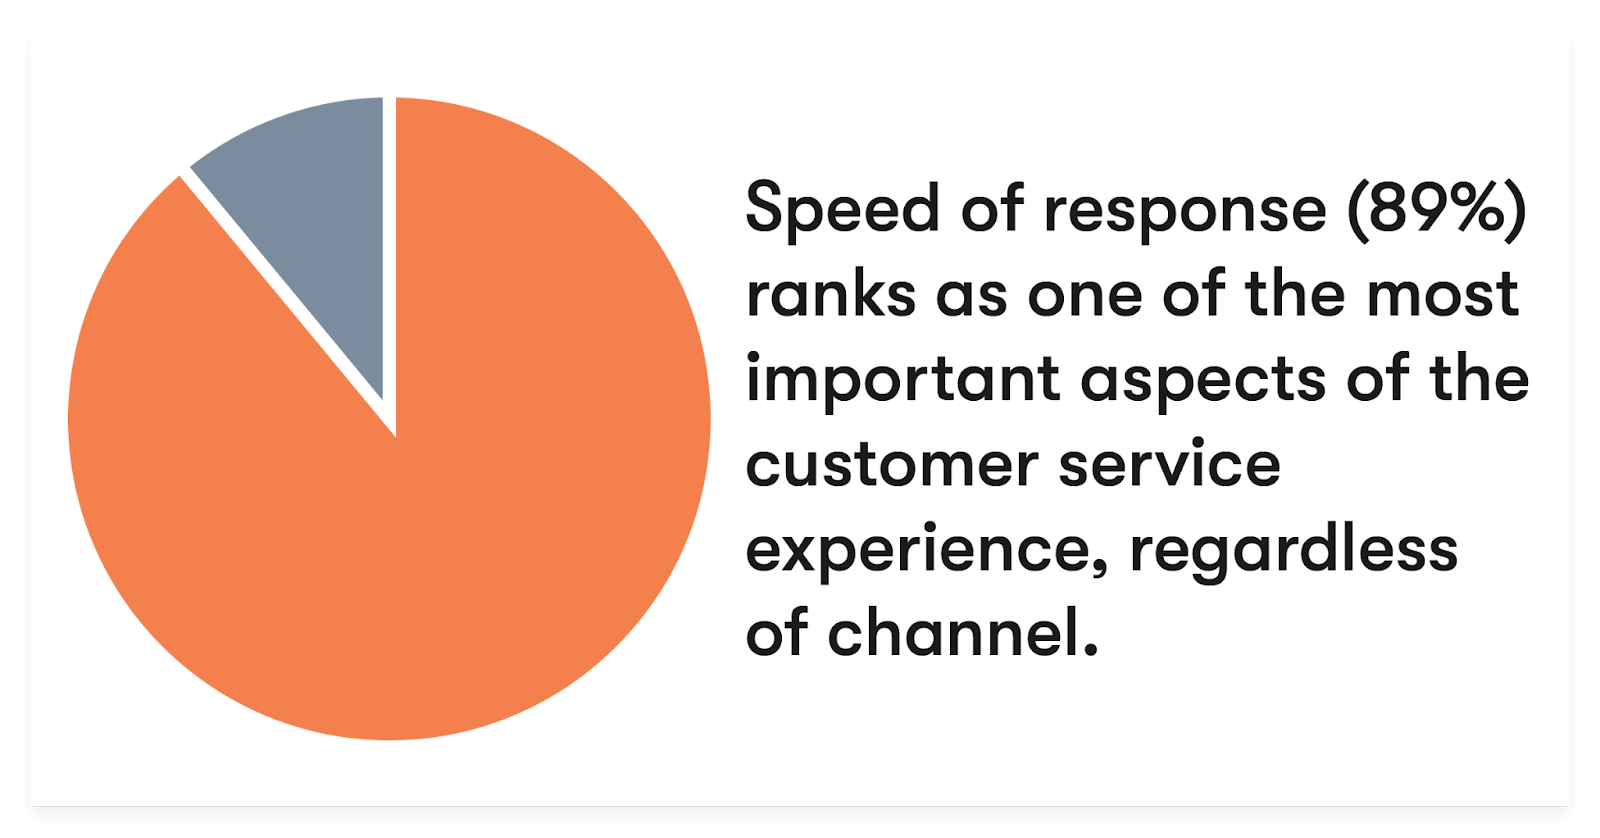 la velocidad de respuesta (89%) se ubica como uno de los aspectos más importantes de la experiencia de servicio al cliente, independientemente del canal